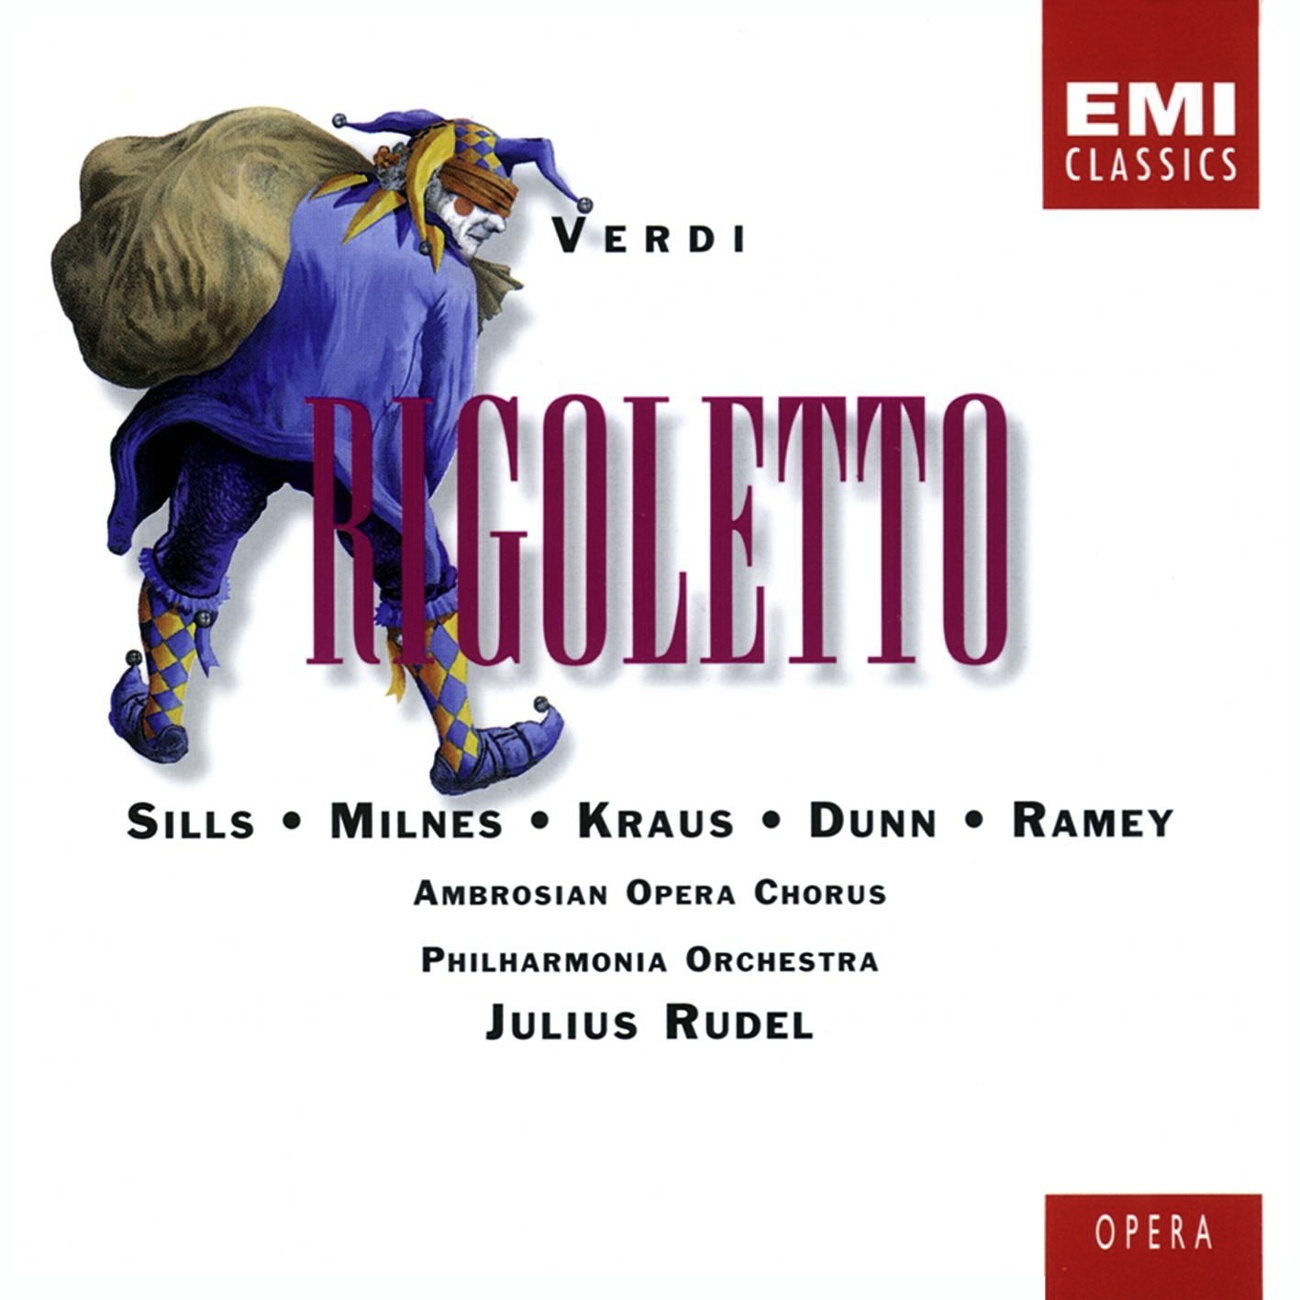 Rigoletto (1996 Digital Remaster), Act 1, Scene 1: Gran nuova! gran nuova!